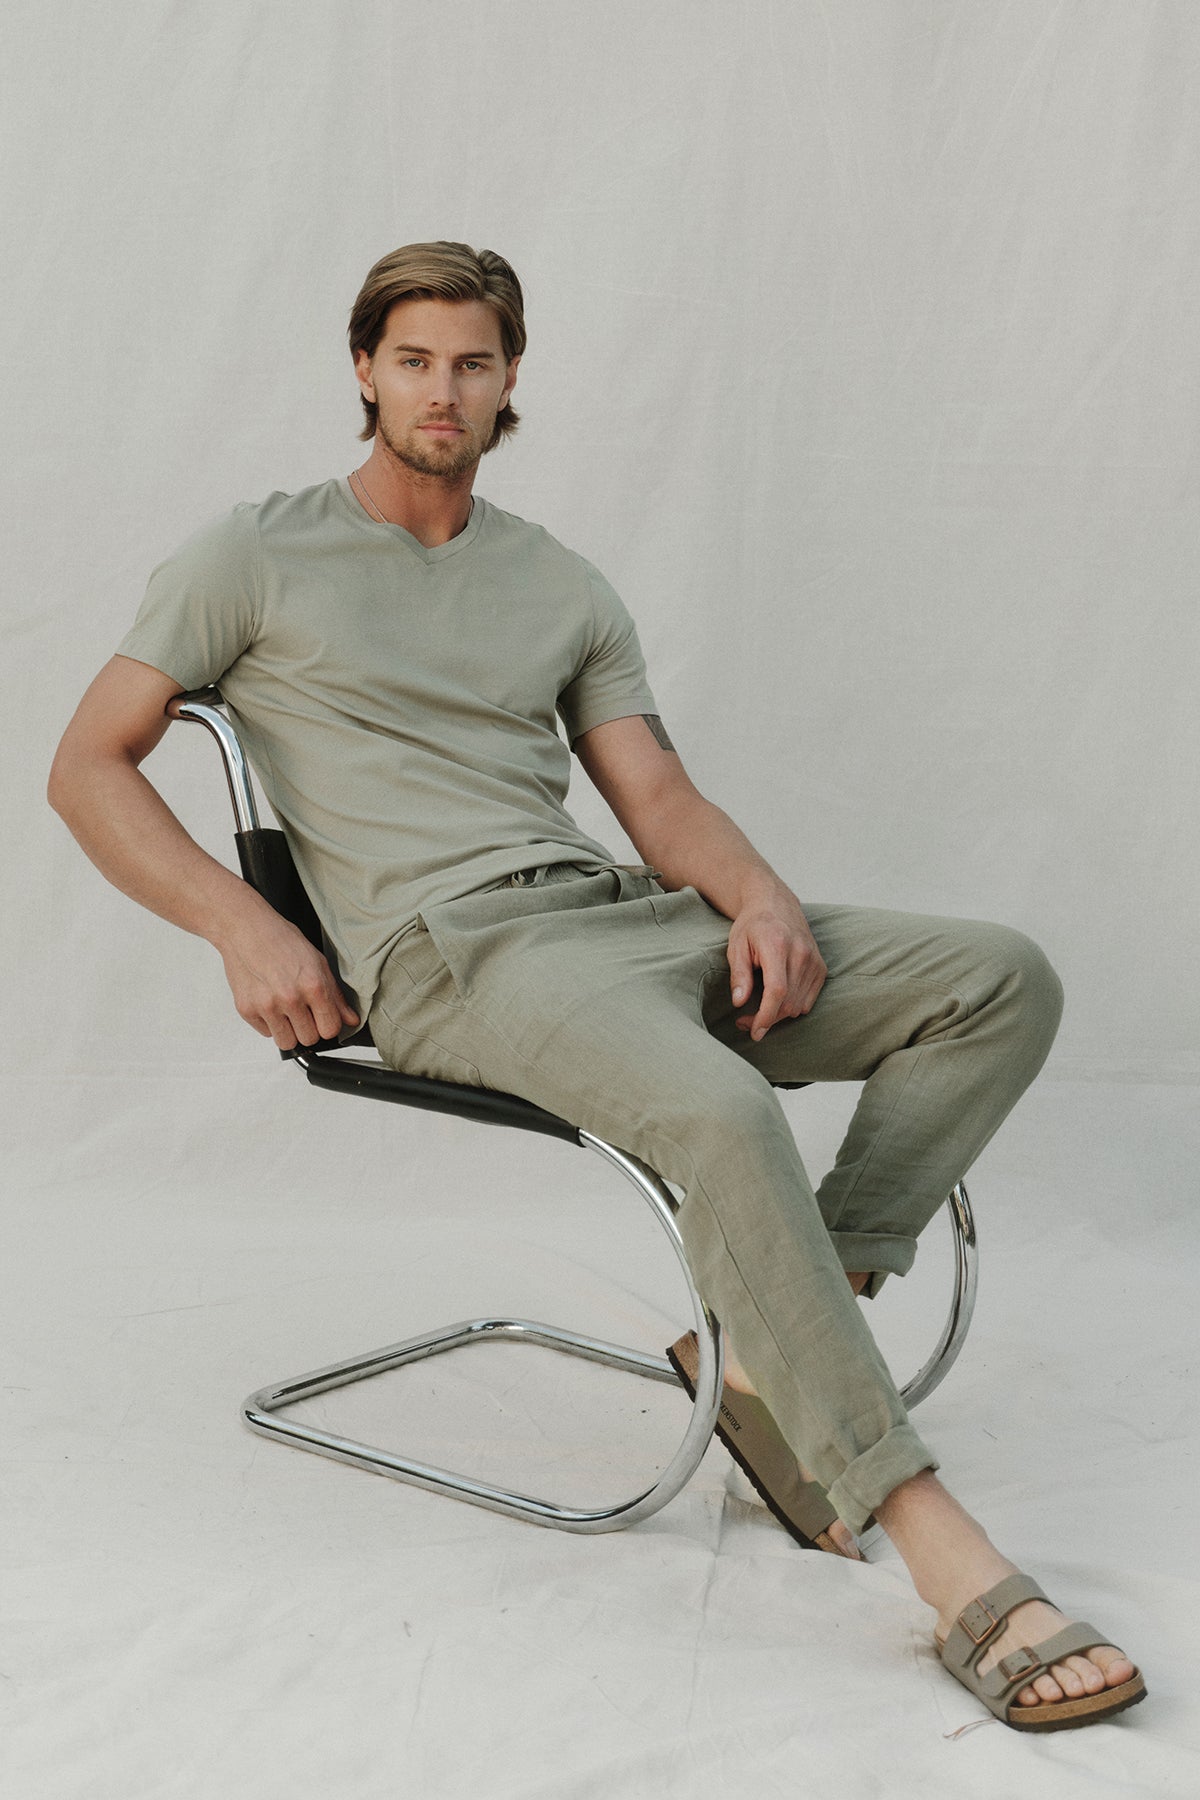 Samsen Short Sleeve V-neck Tee in Basical model sitting in chair-35783134281921